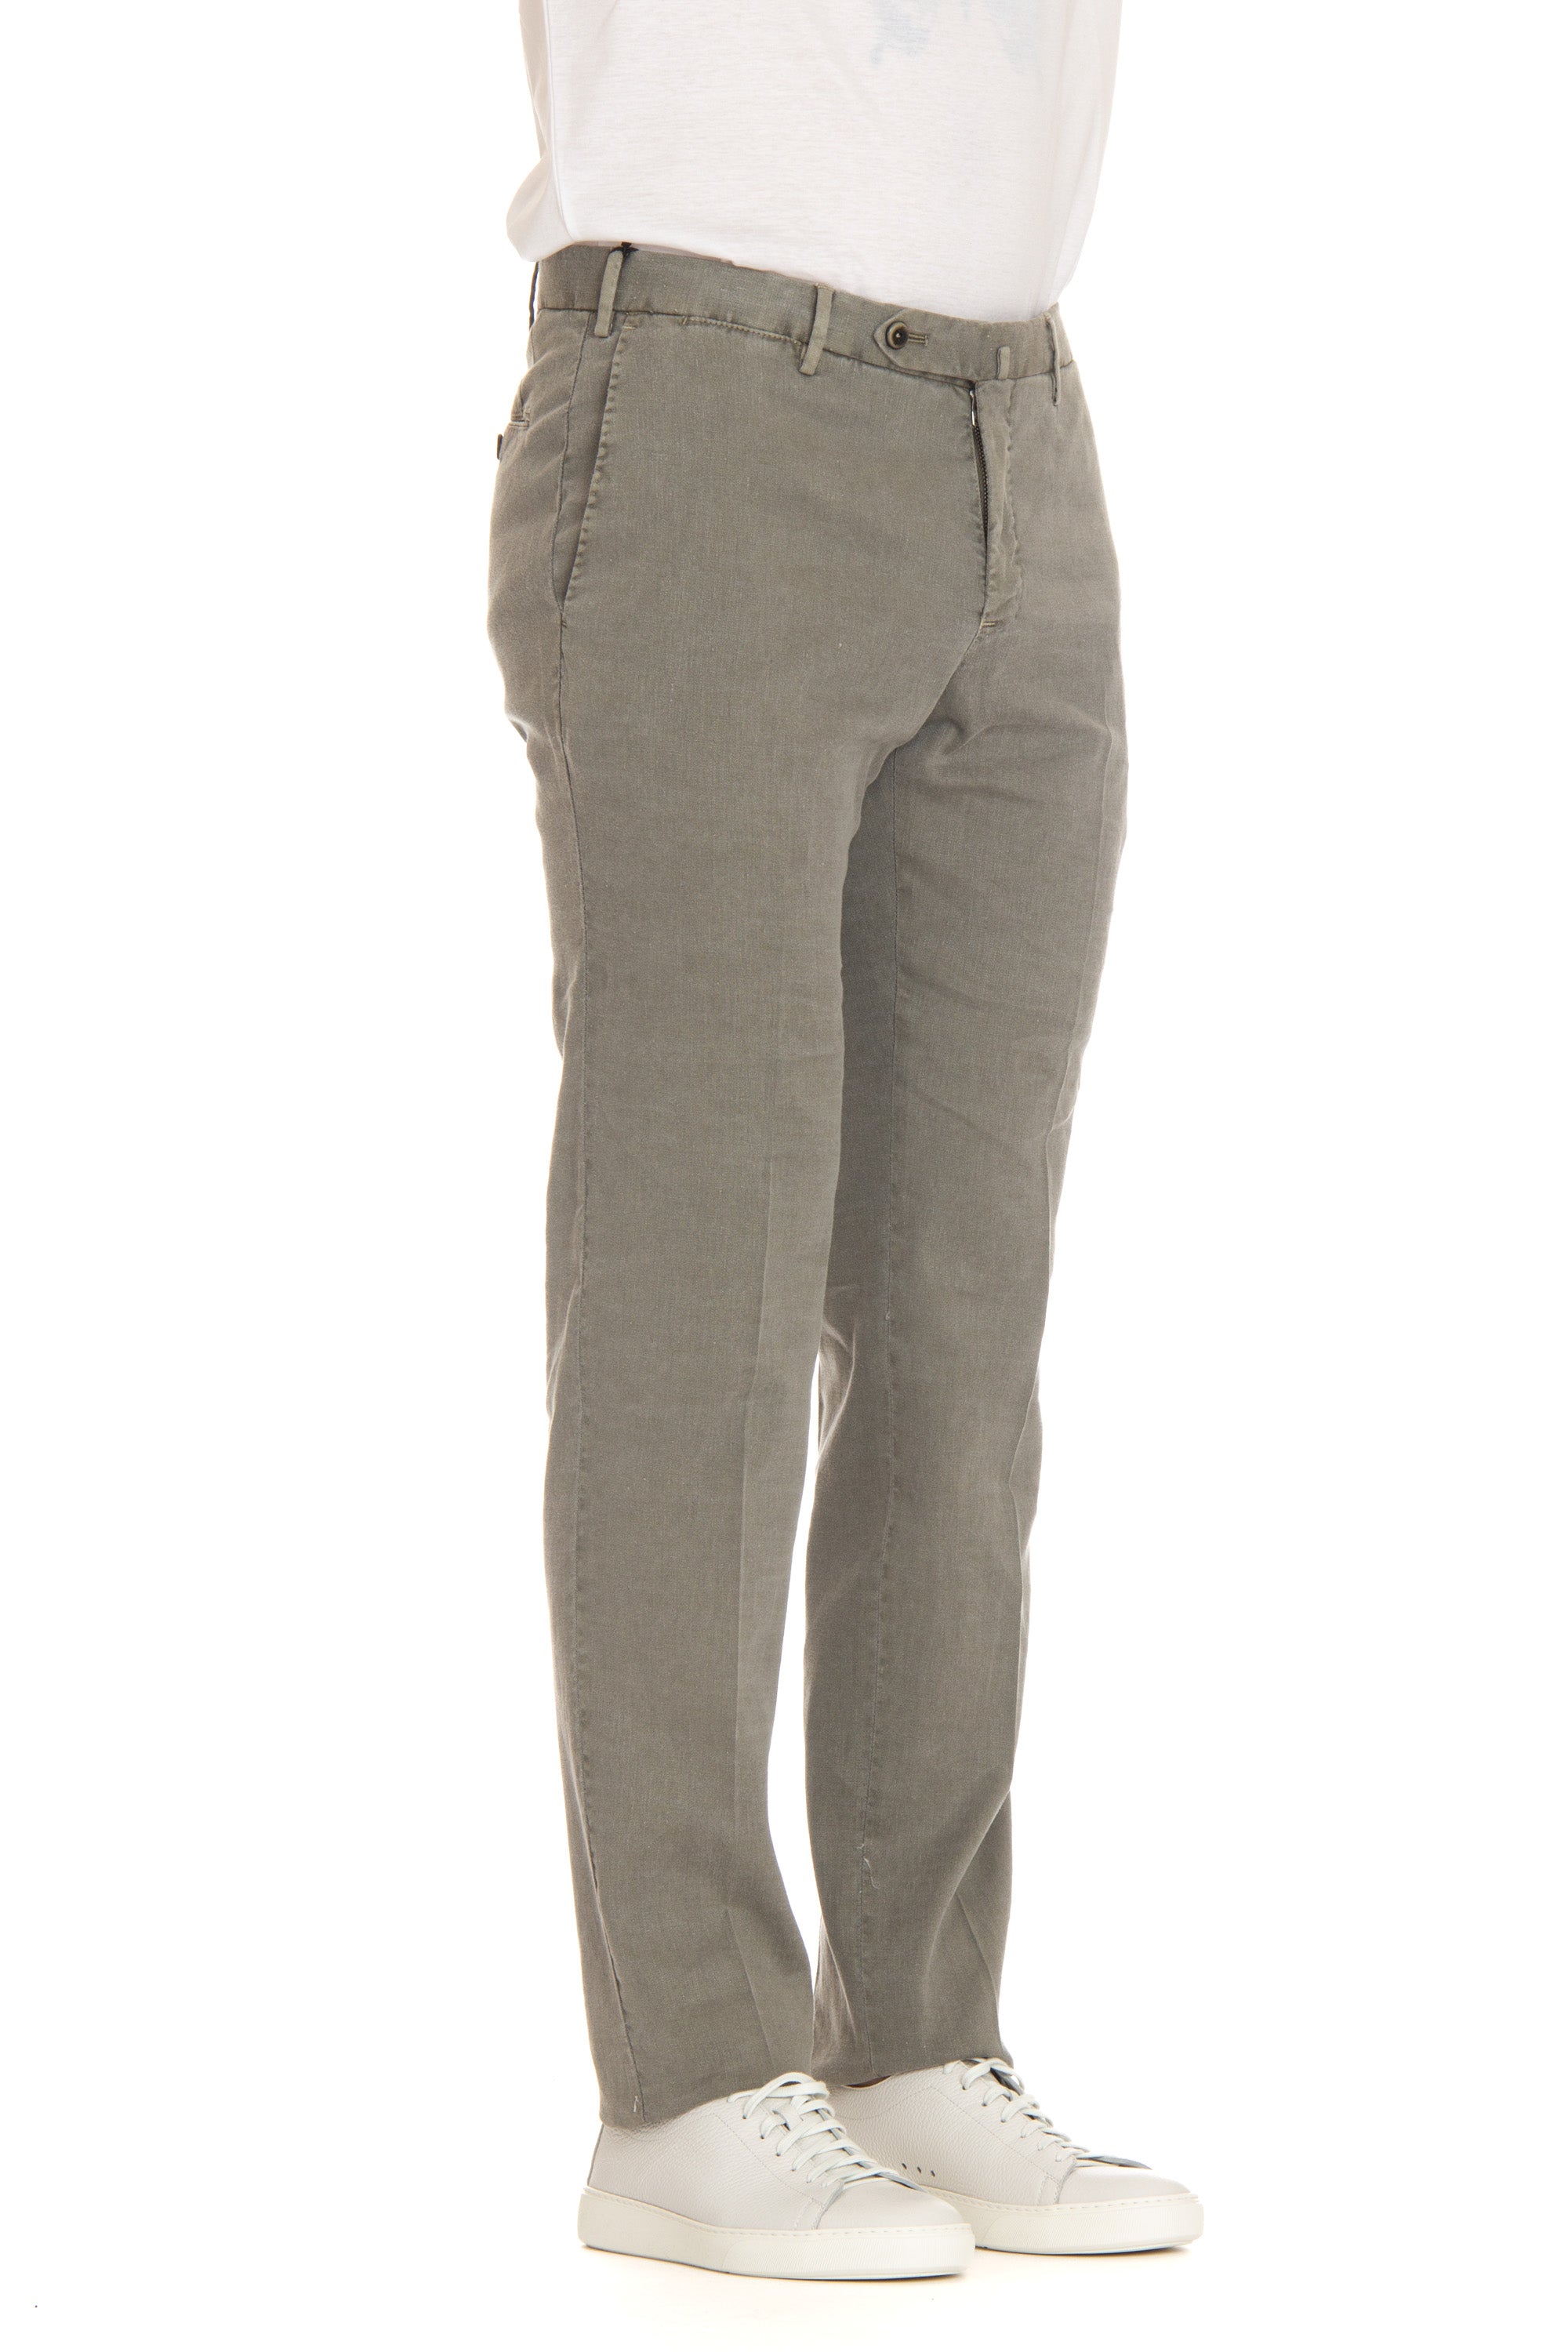 Pantalone in lino-cotone slim fit